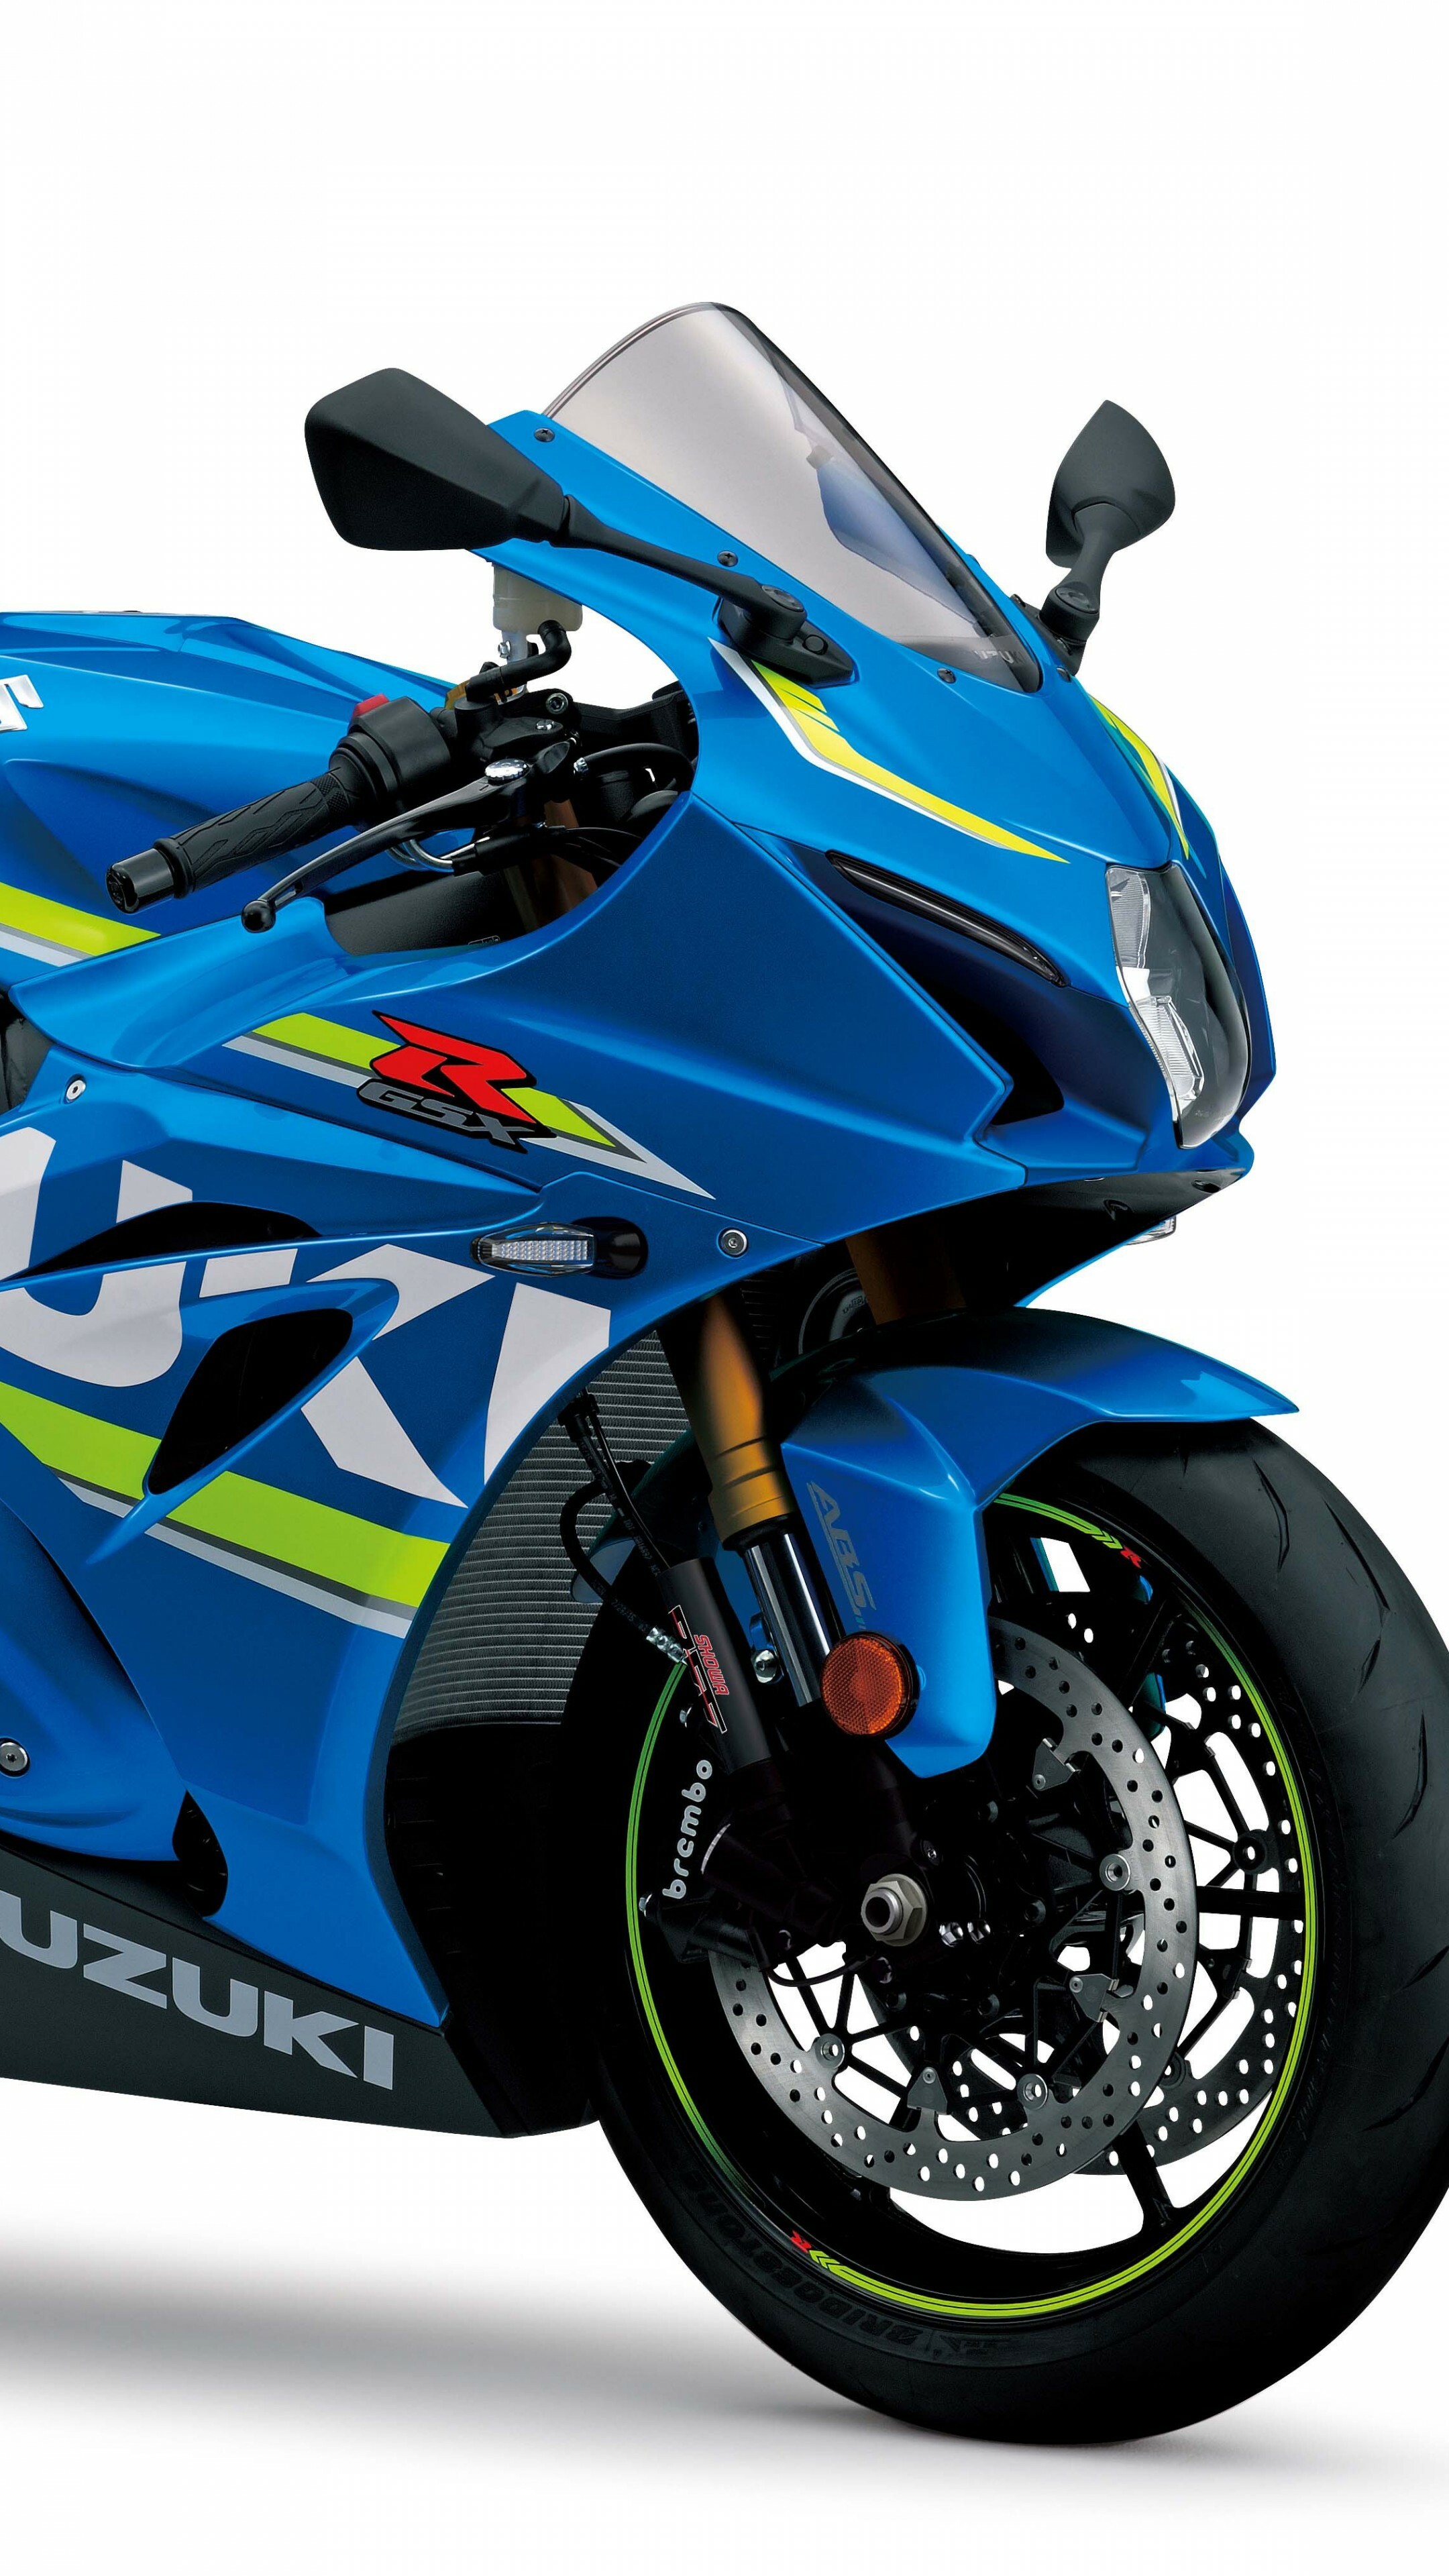 GSX-R: Suzuki Gixxer 1000, 2017 Bikes, Motorcycle, Vehicle. 2160x3840 4K Wallpaper.